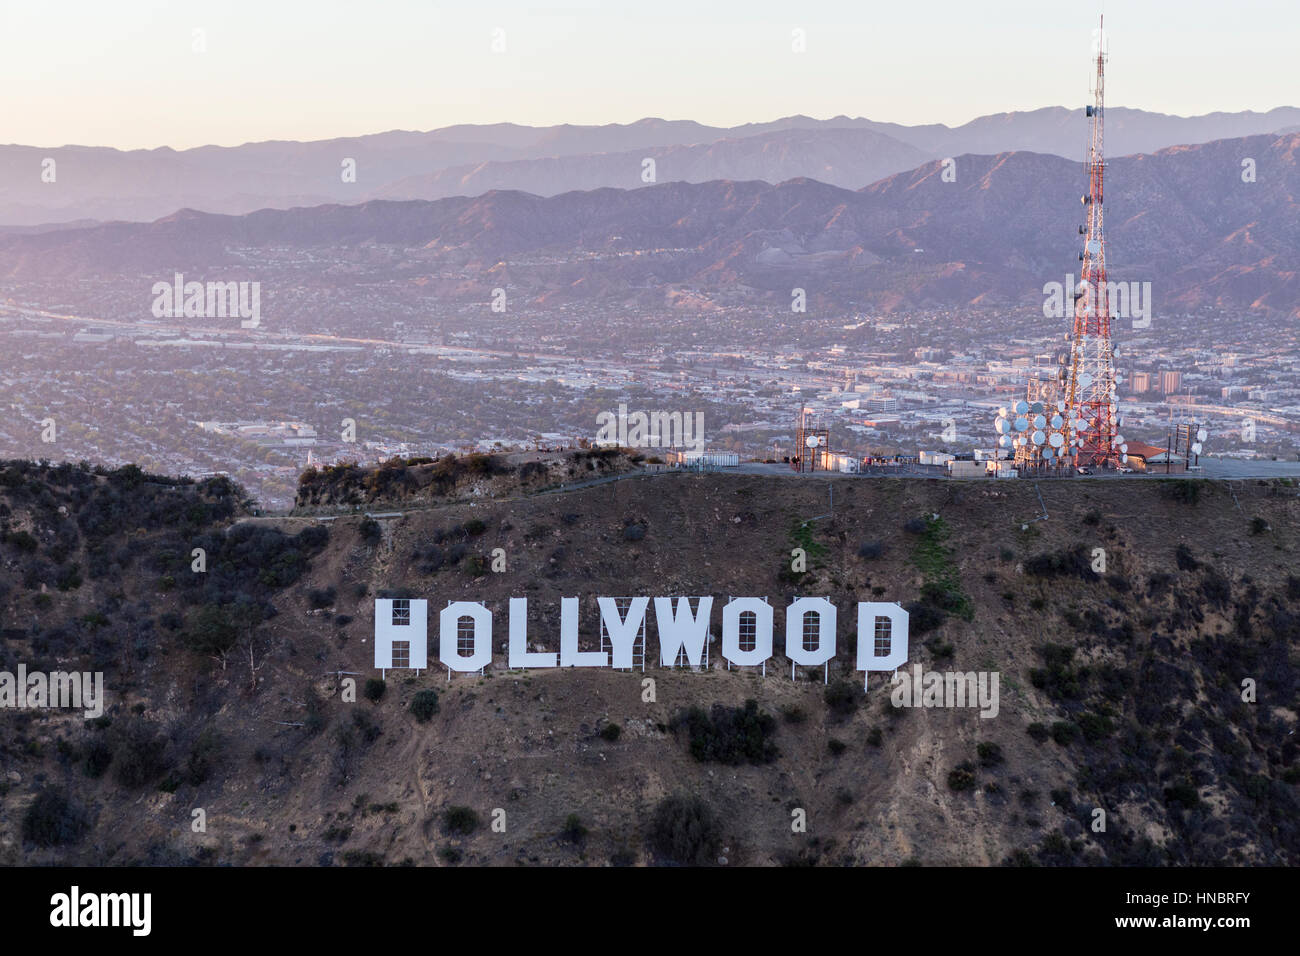 Los Angeles, California, EE.UU. - Julio 21, 2016: Por la tarde antena del letrero de Hollywood en el Parque Griffith con el valle de San Fernando en segundo plano. Foto de stock